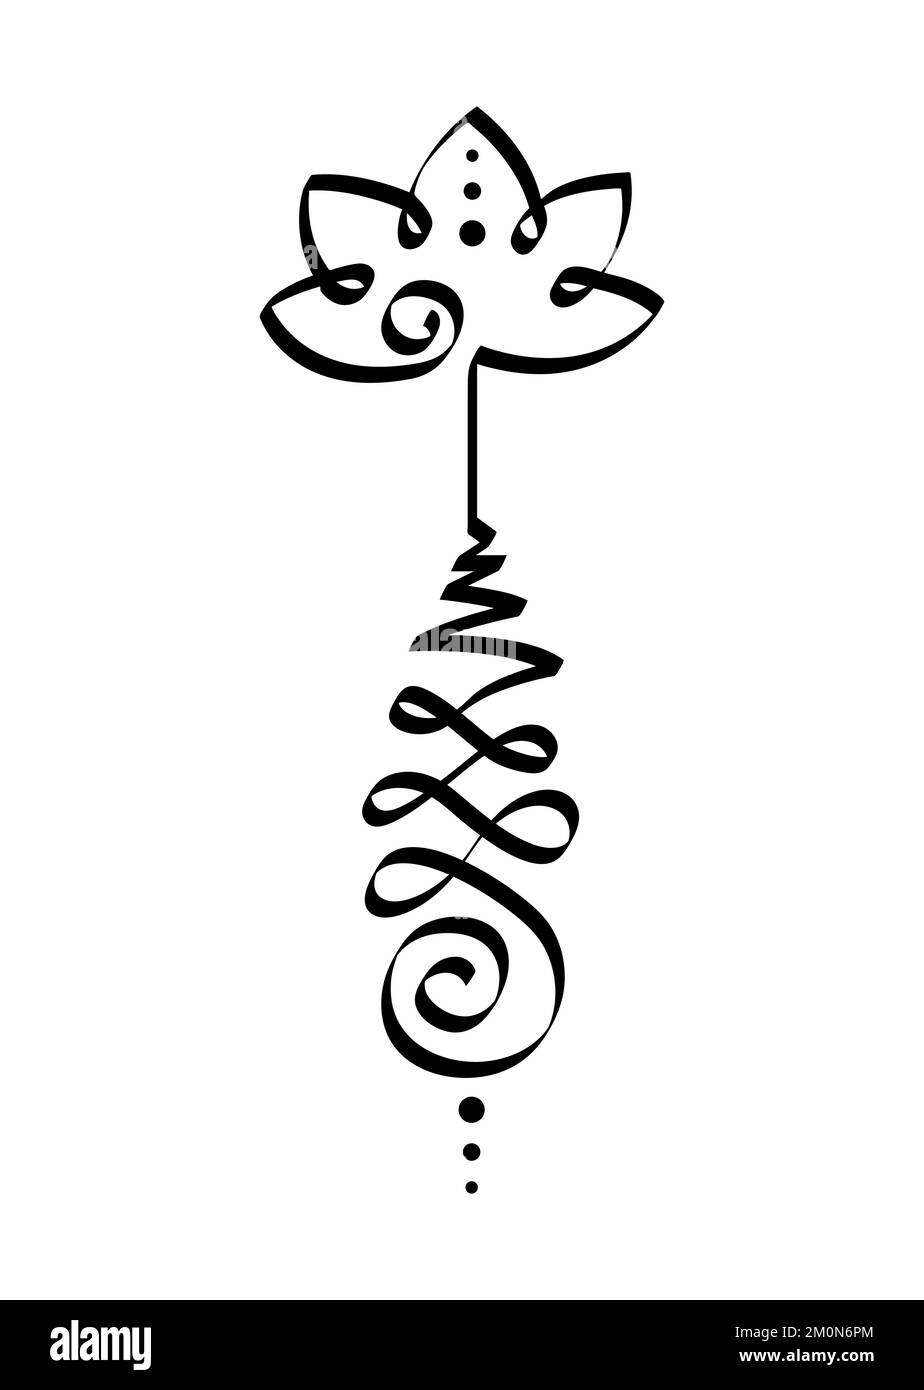 Symbole de fleur de lotus unalome, signe hindou ou ou bouddhiste représentant le chemin vers l'illumination. Icône yantras Tattoo. Dessin simple à l'encre noire et blanche Illustration de Vecteur